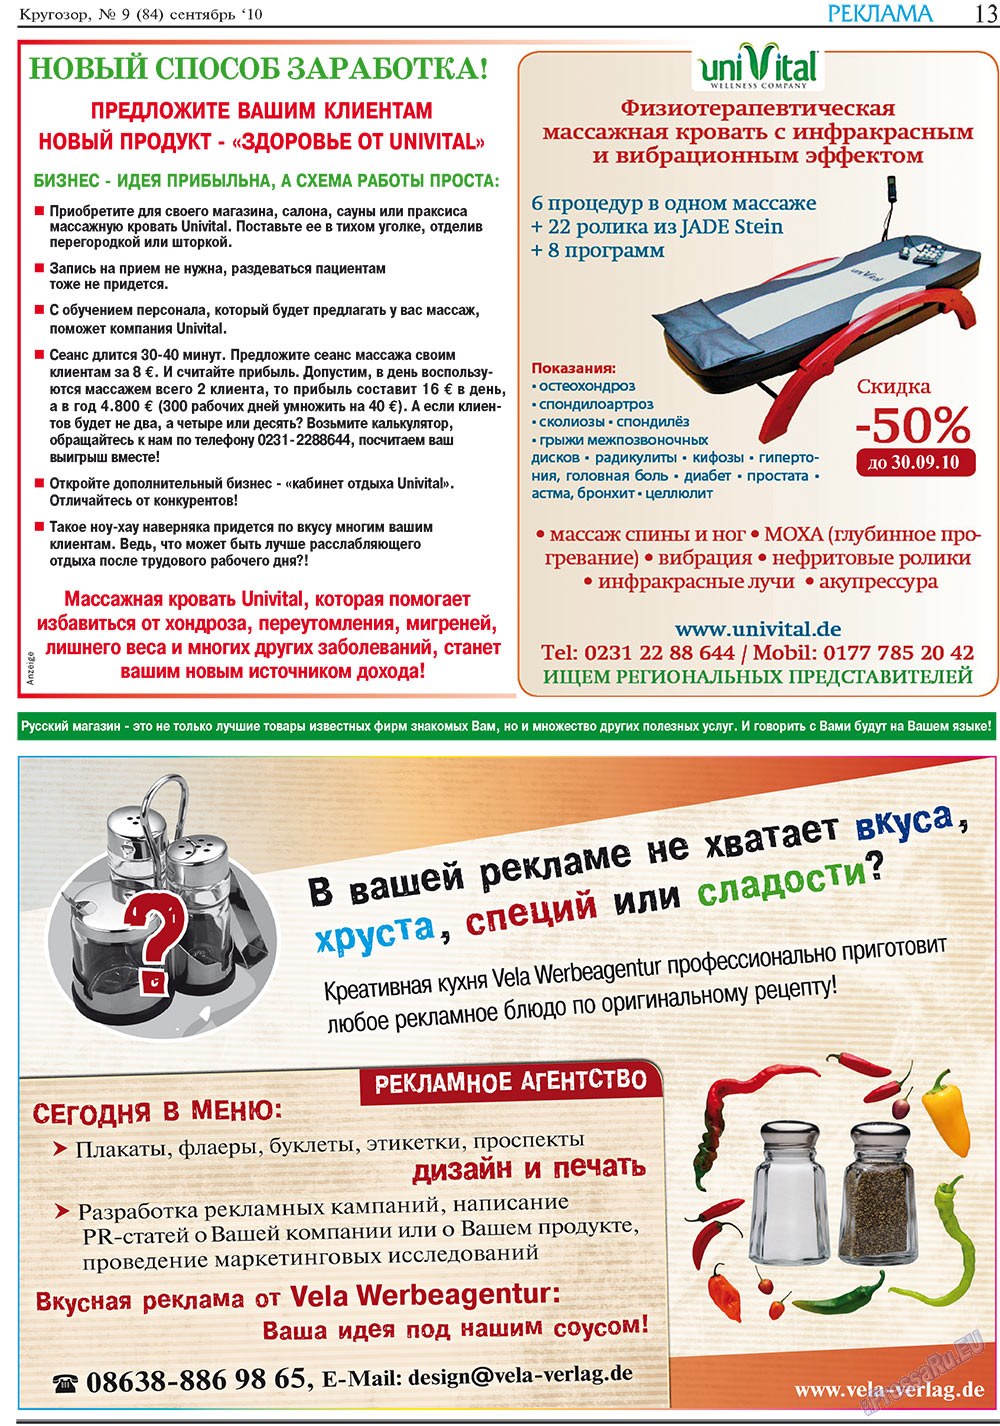 Кругозор плюс!, газета. 2010 №9 стр.13